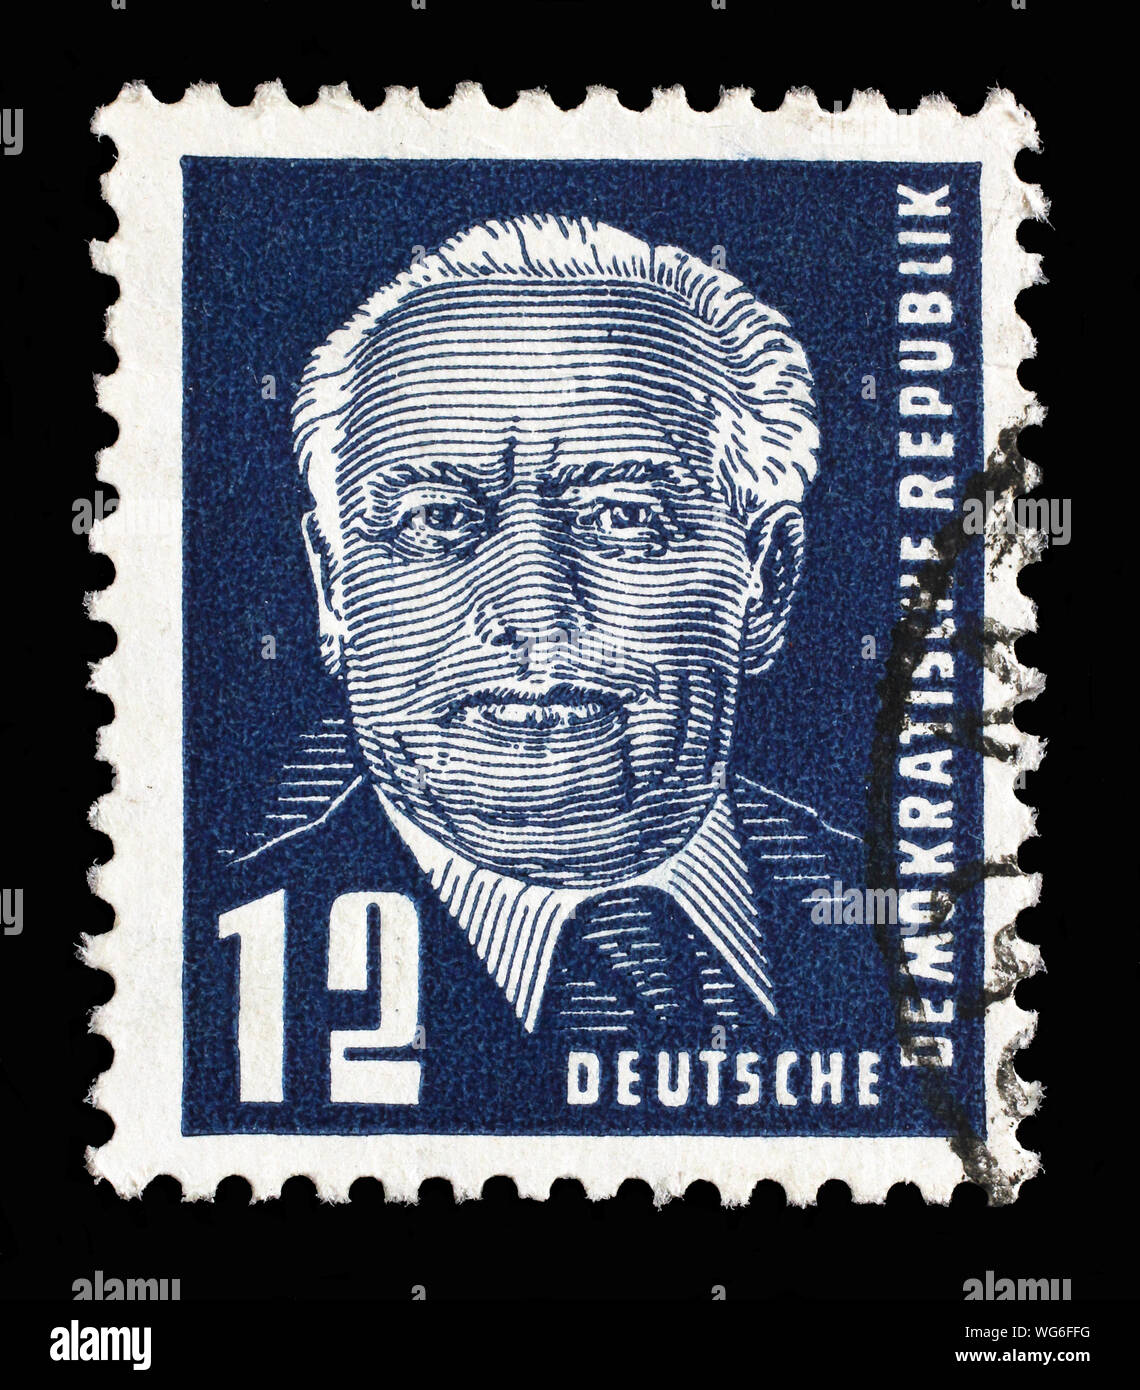 Stempel ausgestellt in Deutschland - Demokratische Republik (DDR) zeigt Staatspräsidenten Wilhelm Pieck, circa 1950. Stockfoto